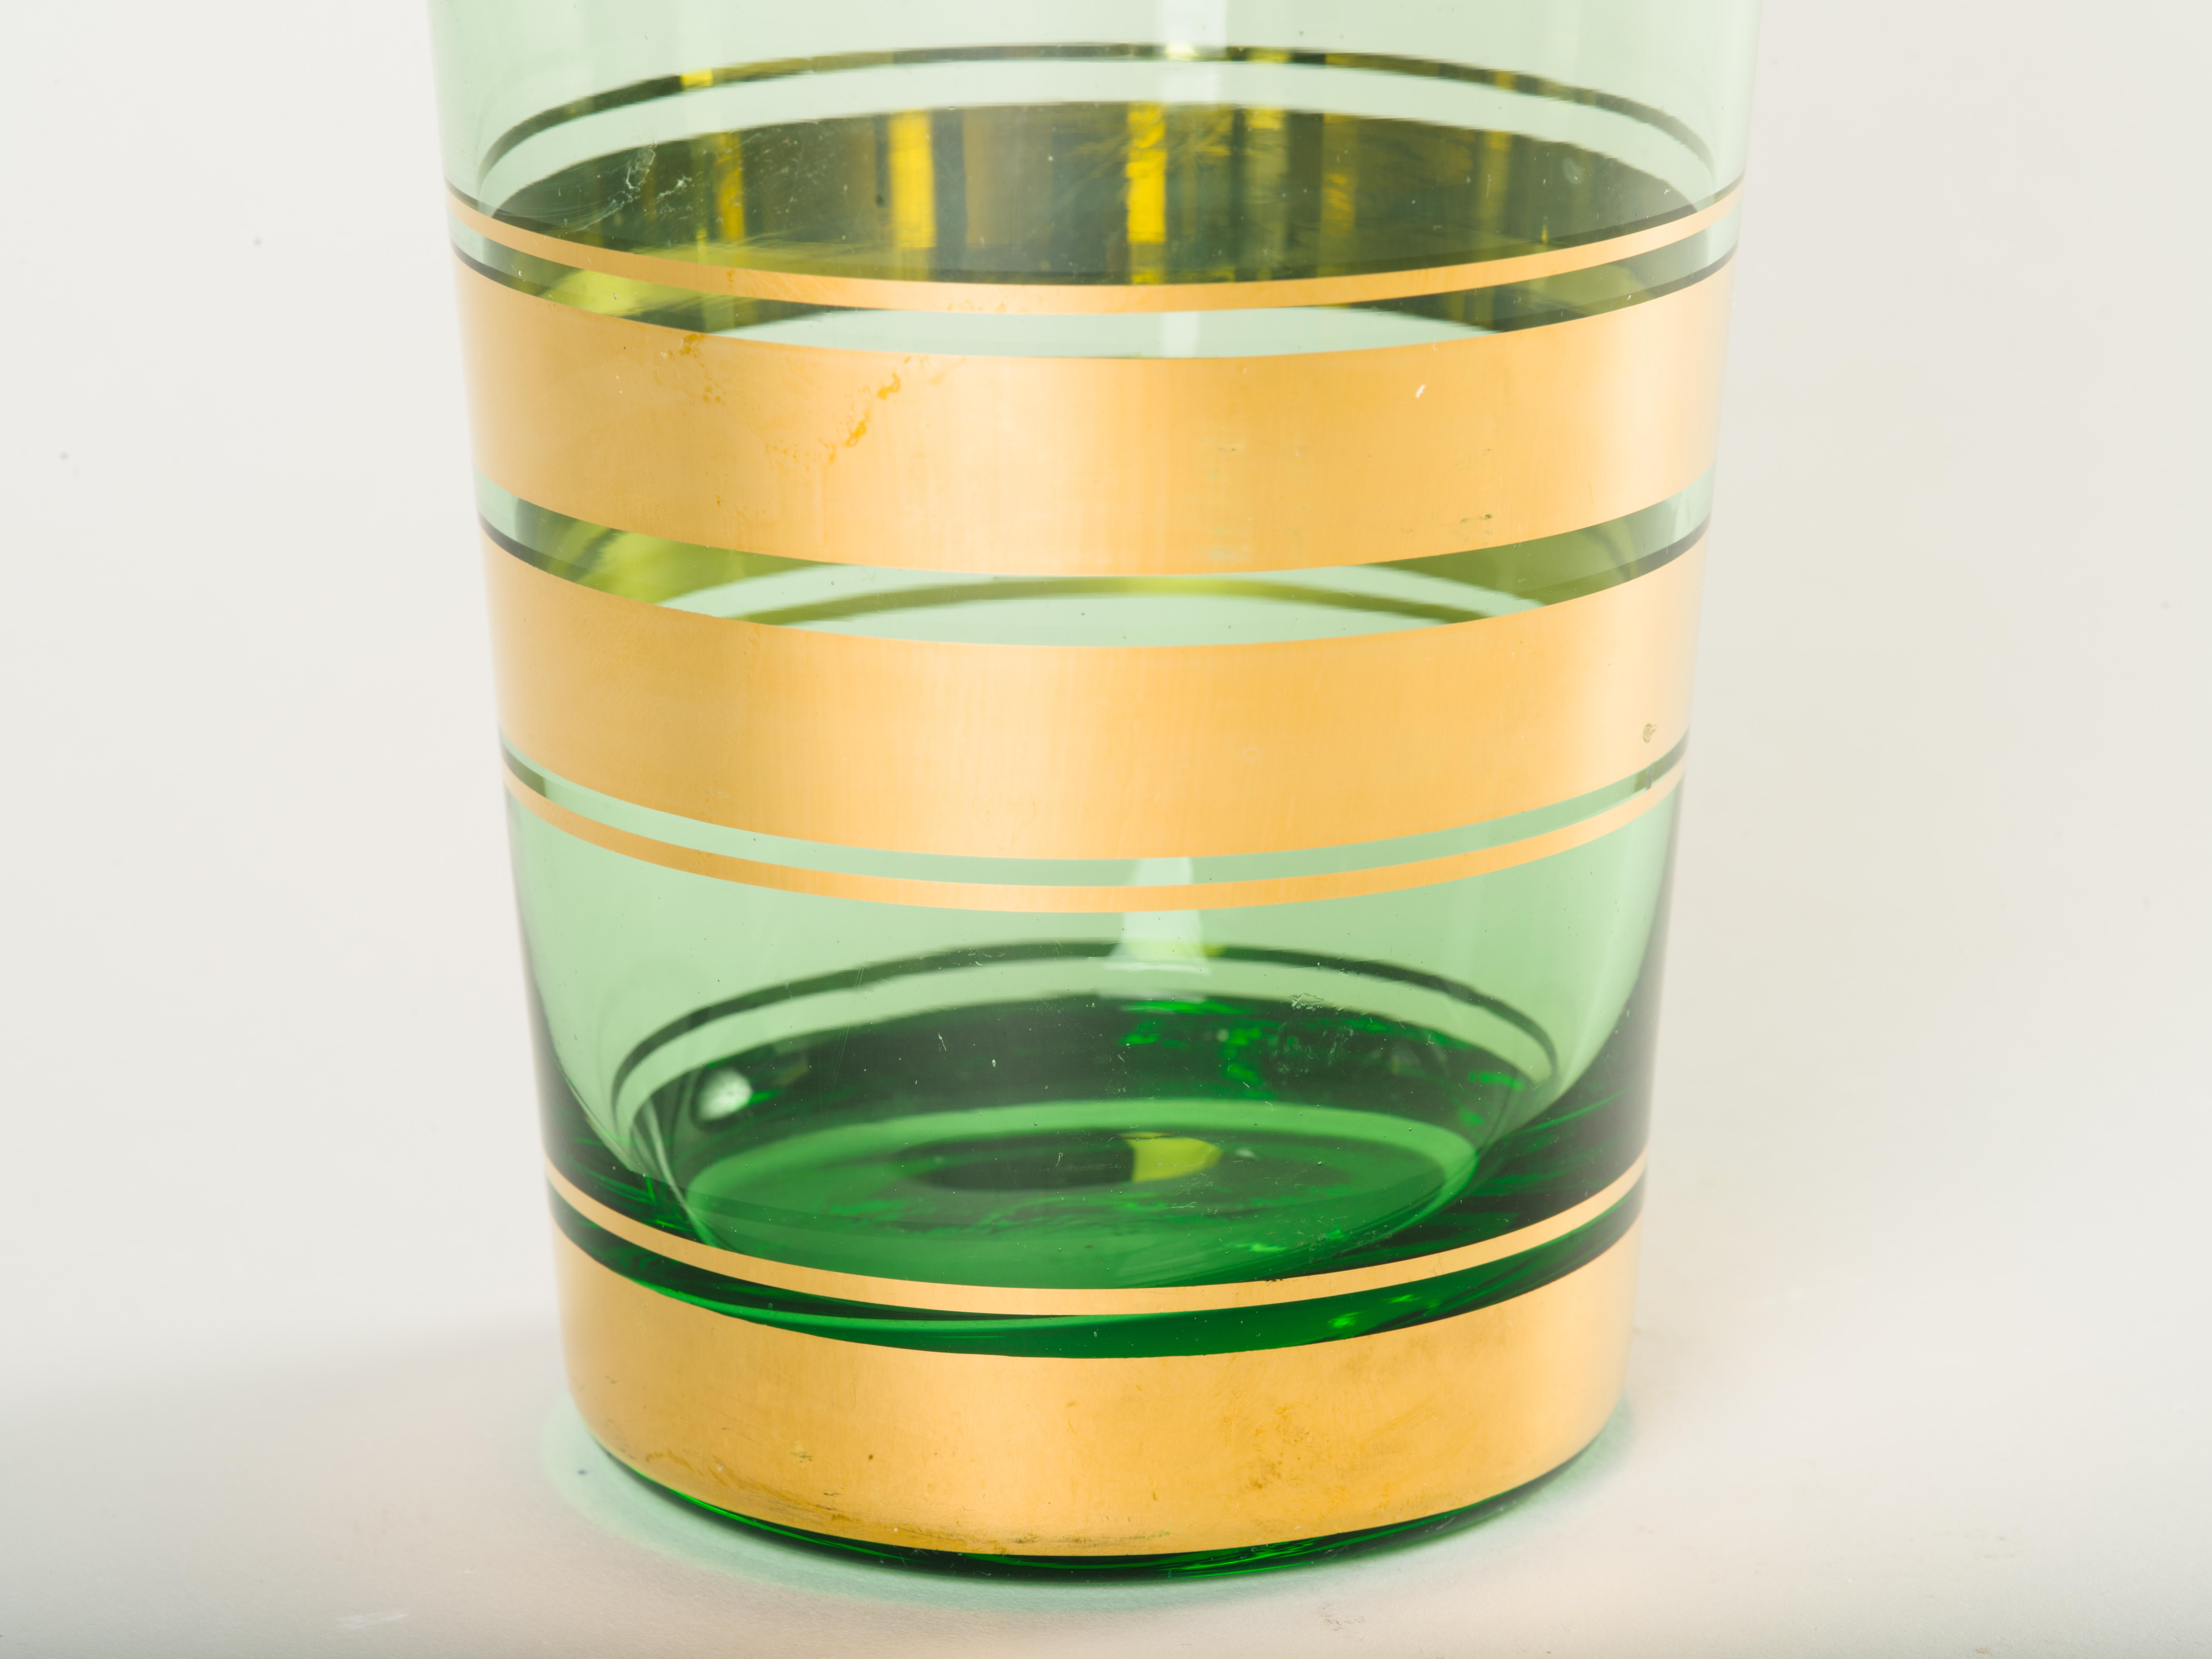 Czech Mid-Century Modern Blown Glass Vase with 24-Karat Gold Details